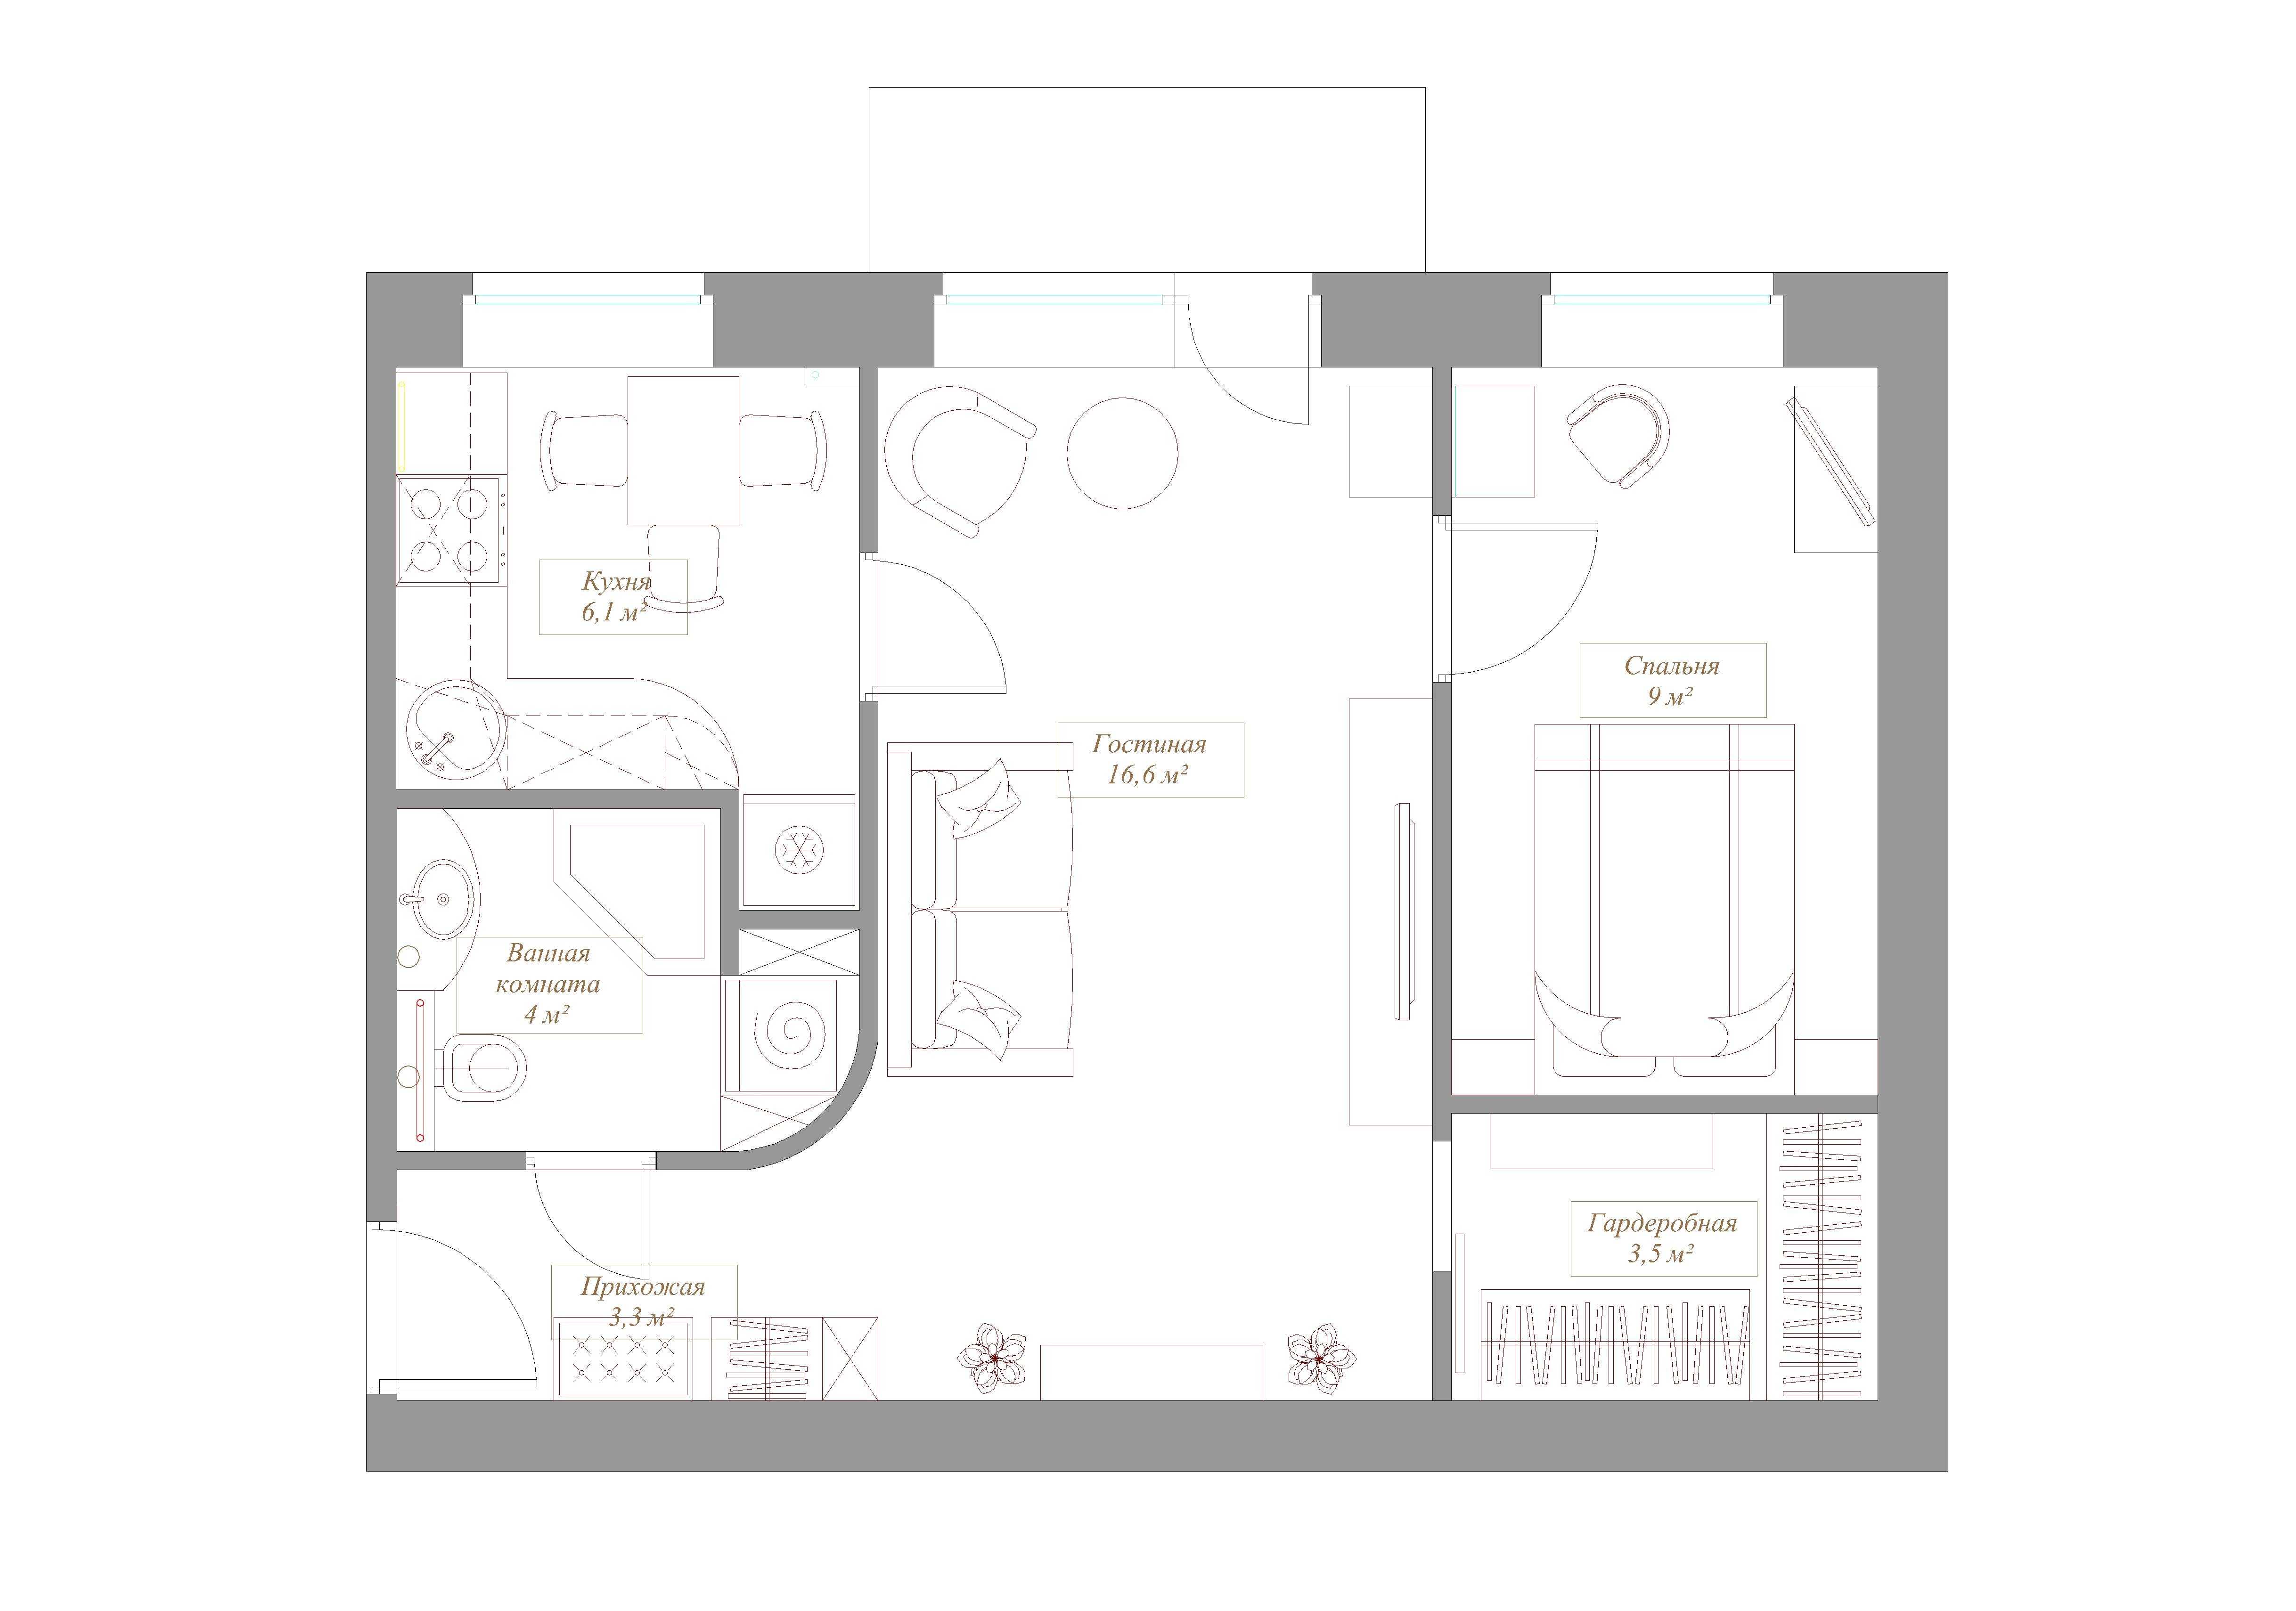 Перепланировка двухкомнатной квартиры - варианты перепланировки